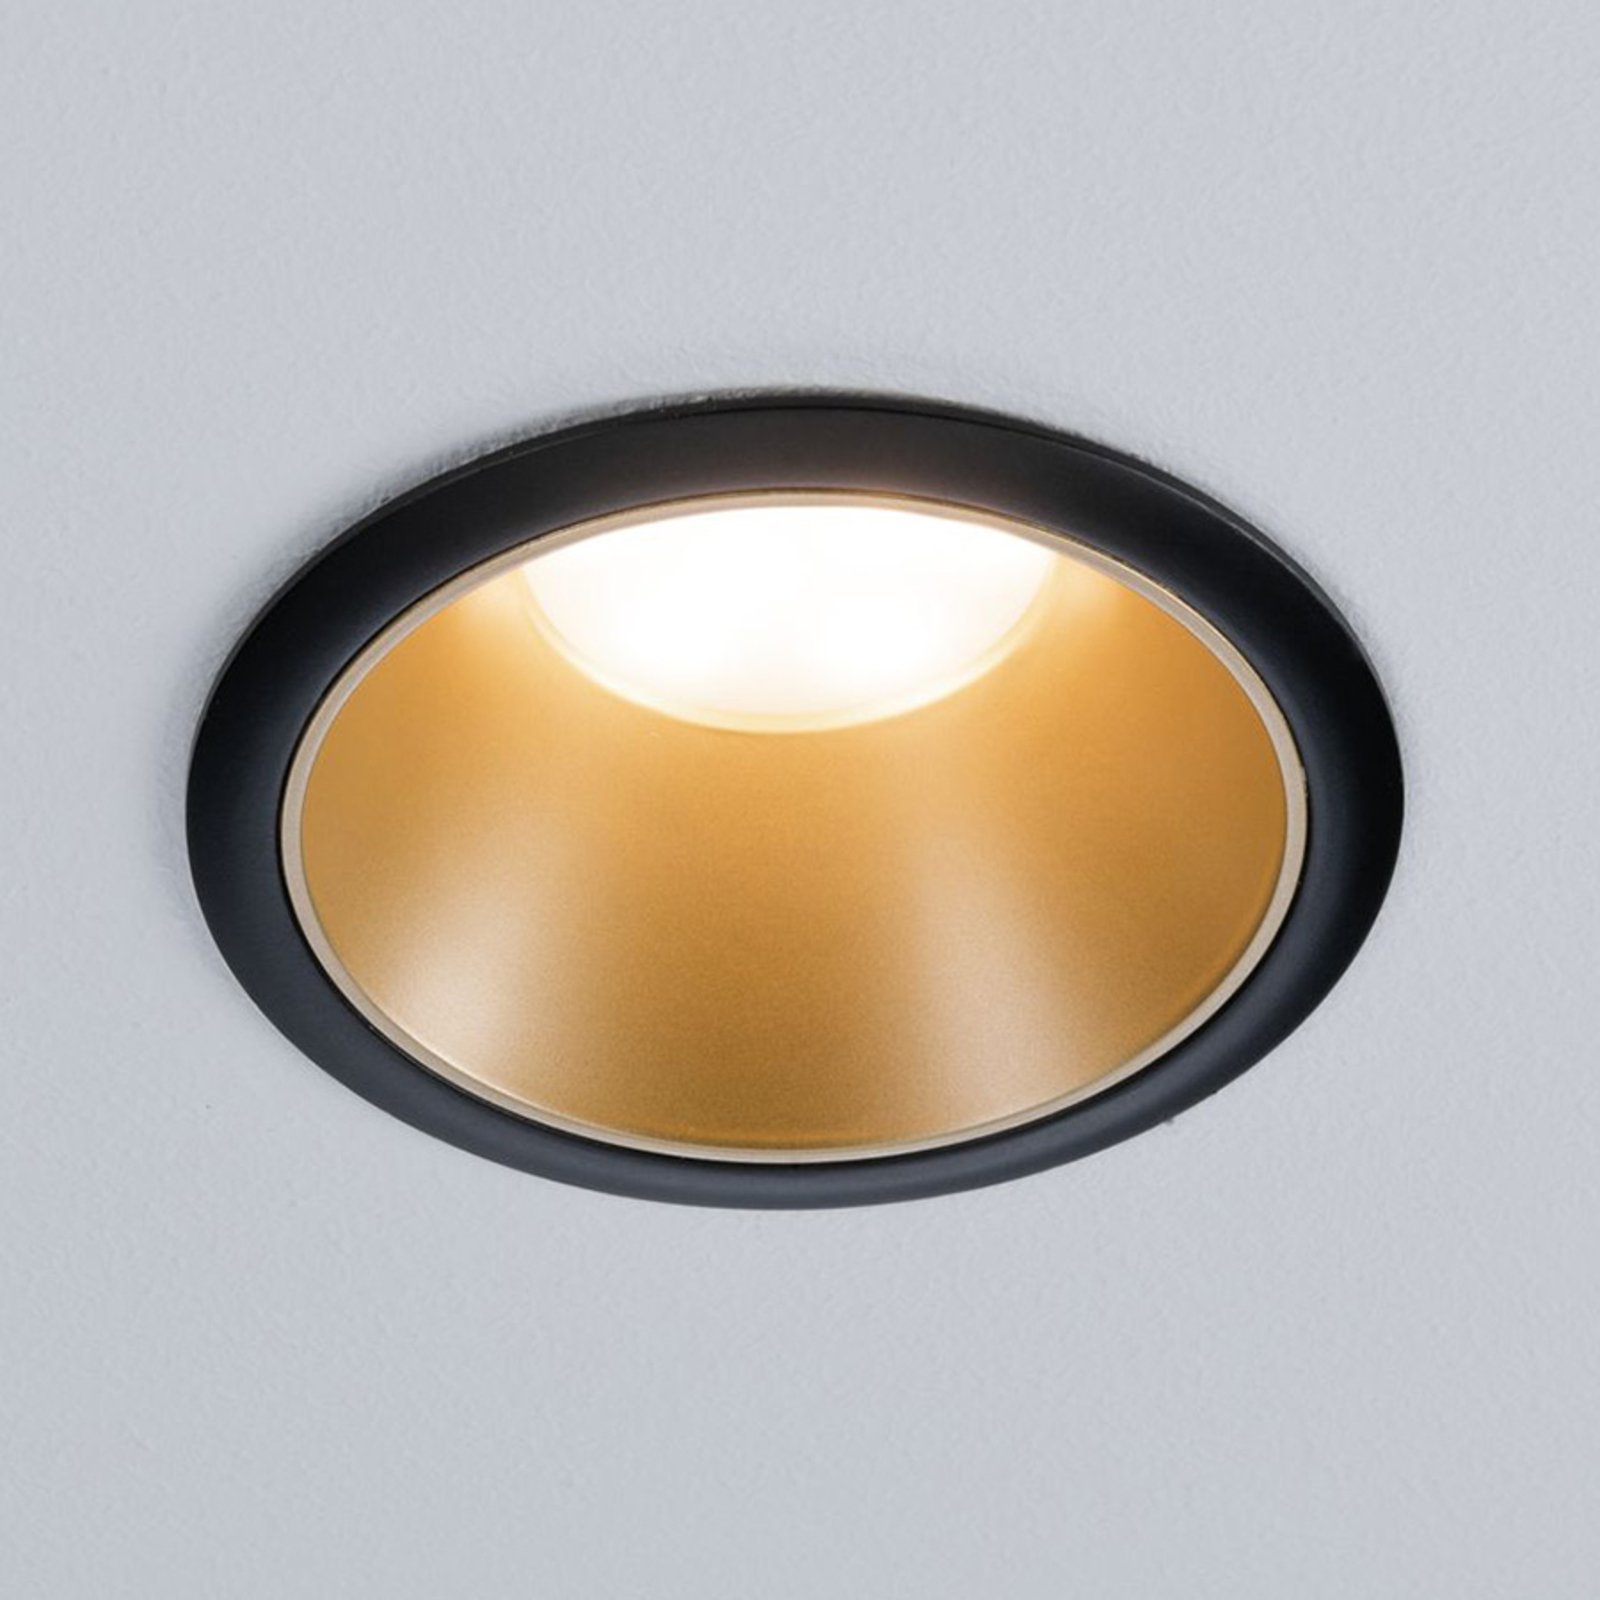 Paulmann Cole LED-Spotlight, gold-schwarz, 3er-Set